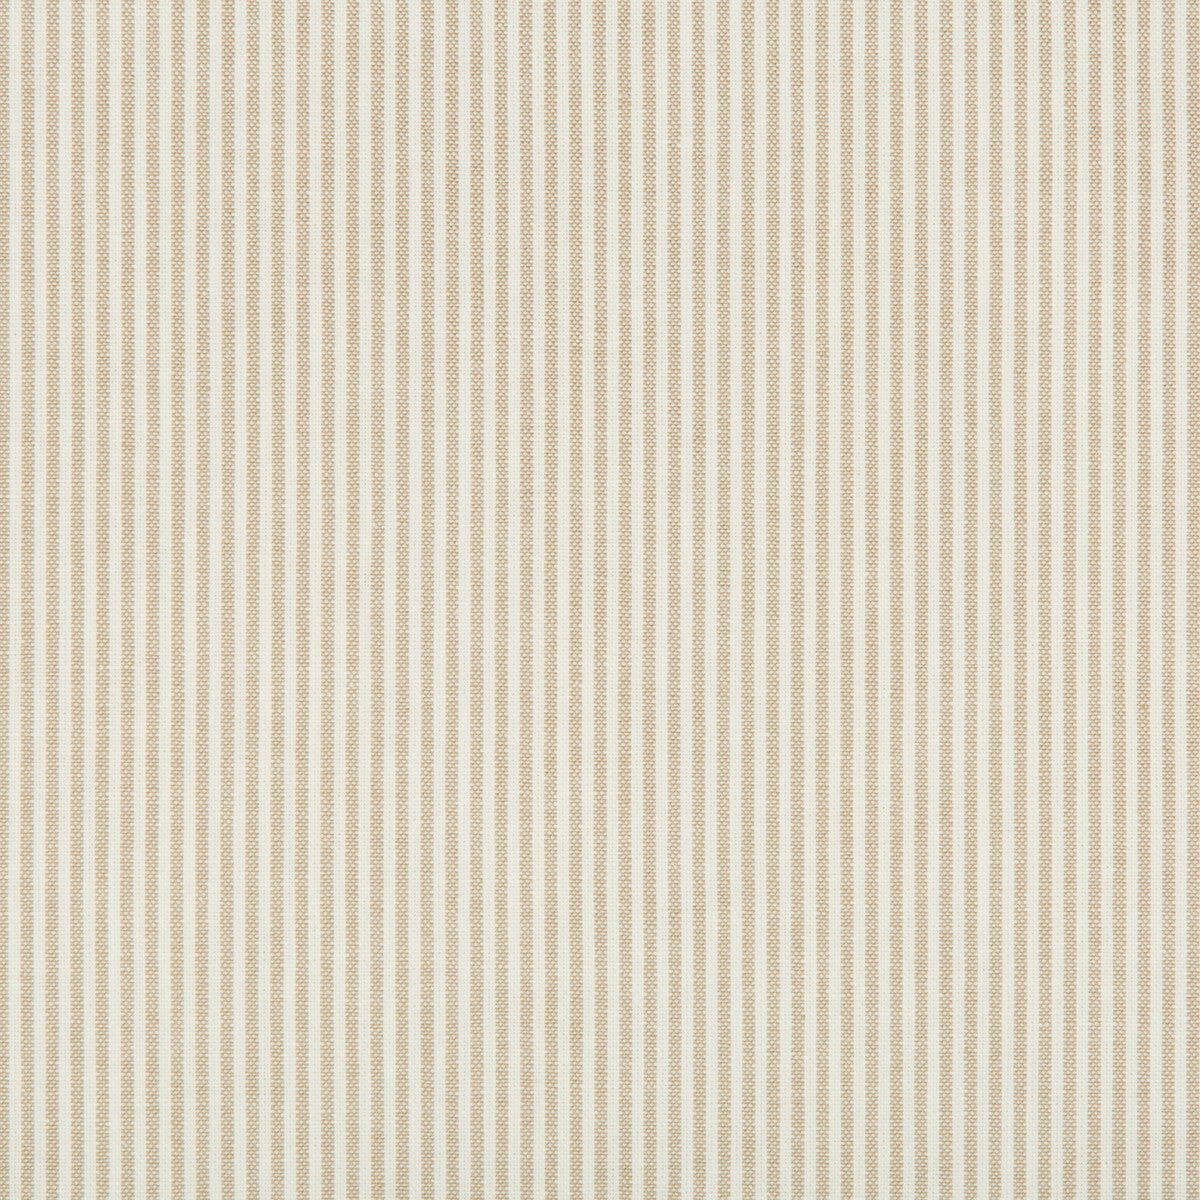 Kravet Basics fabric in 35199-116 color - pattern 35199.116.0 - by Kravet Basics